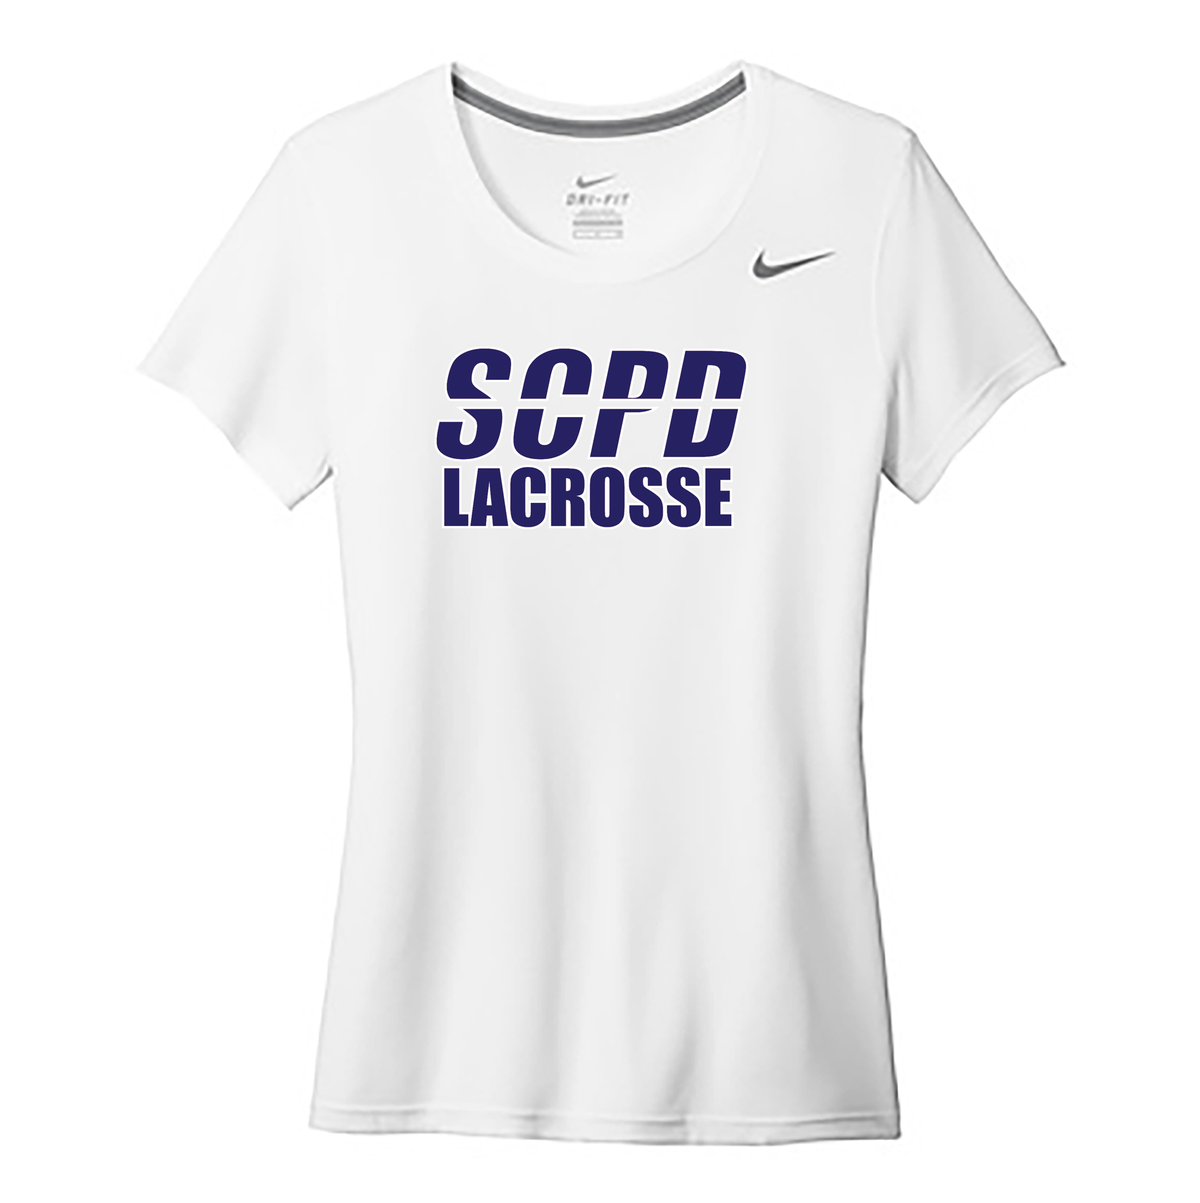 SCPD Lacrosse Nike Ladies Legend Tee